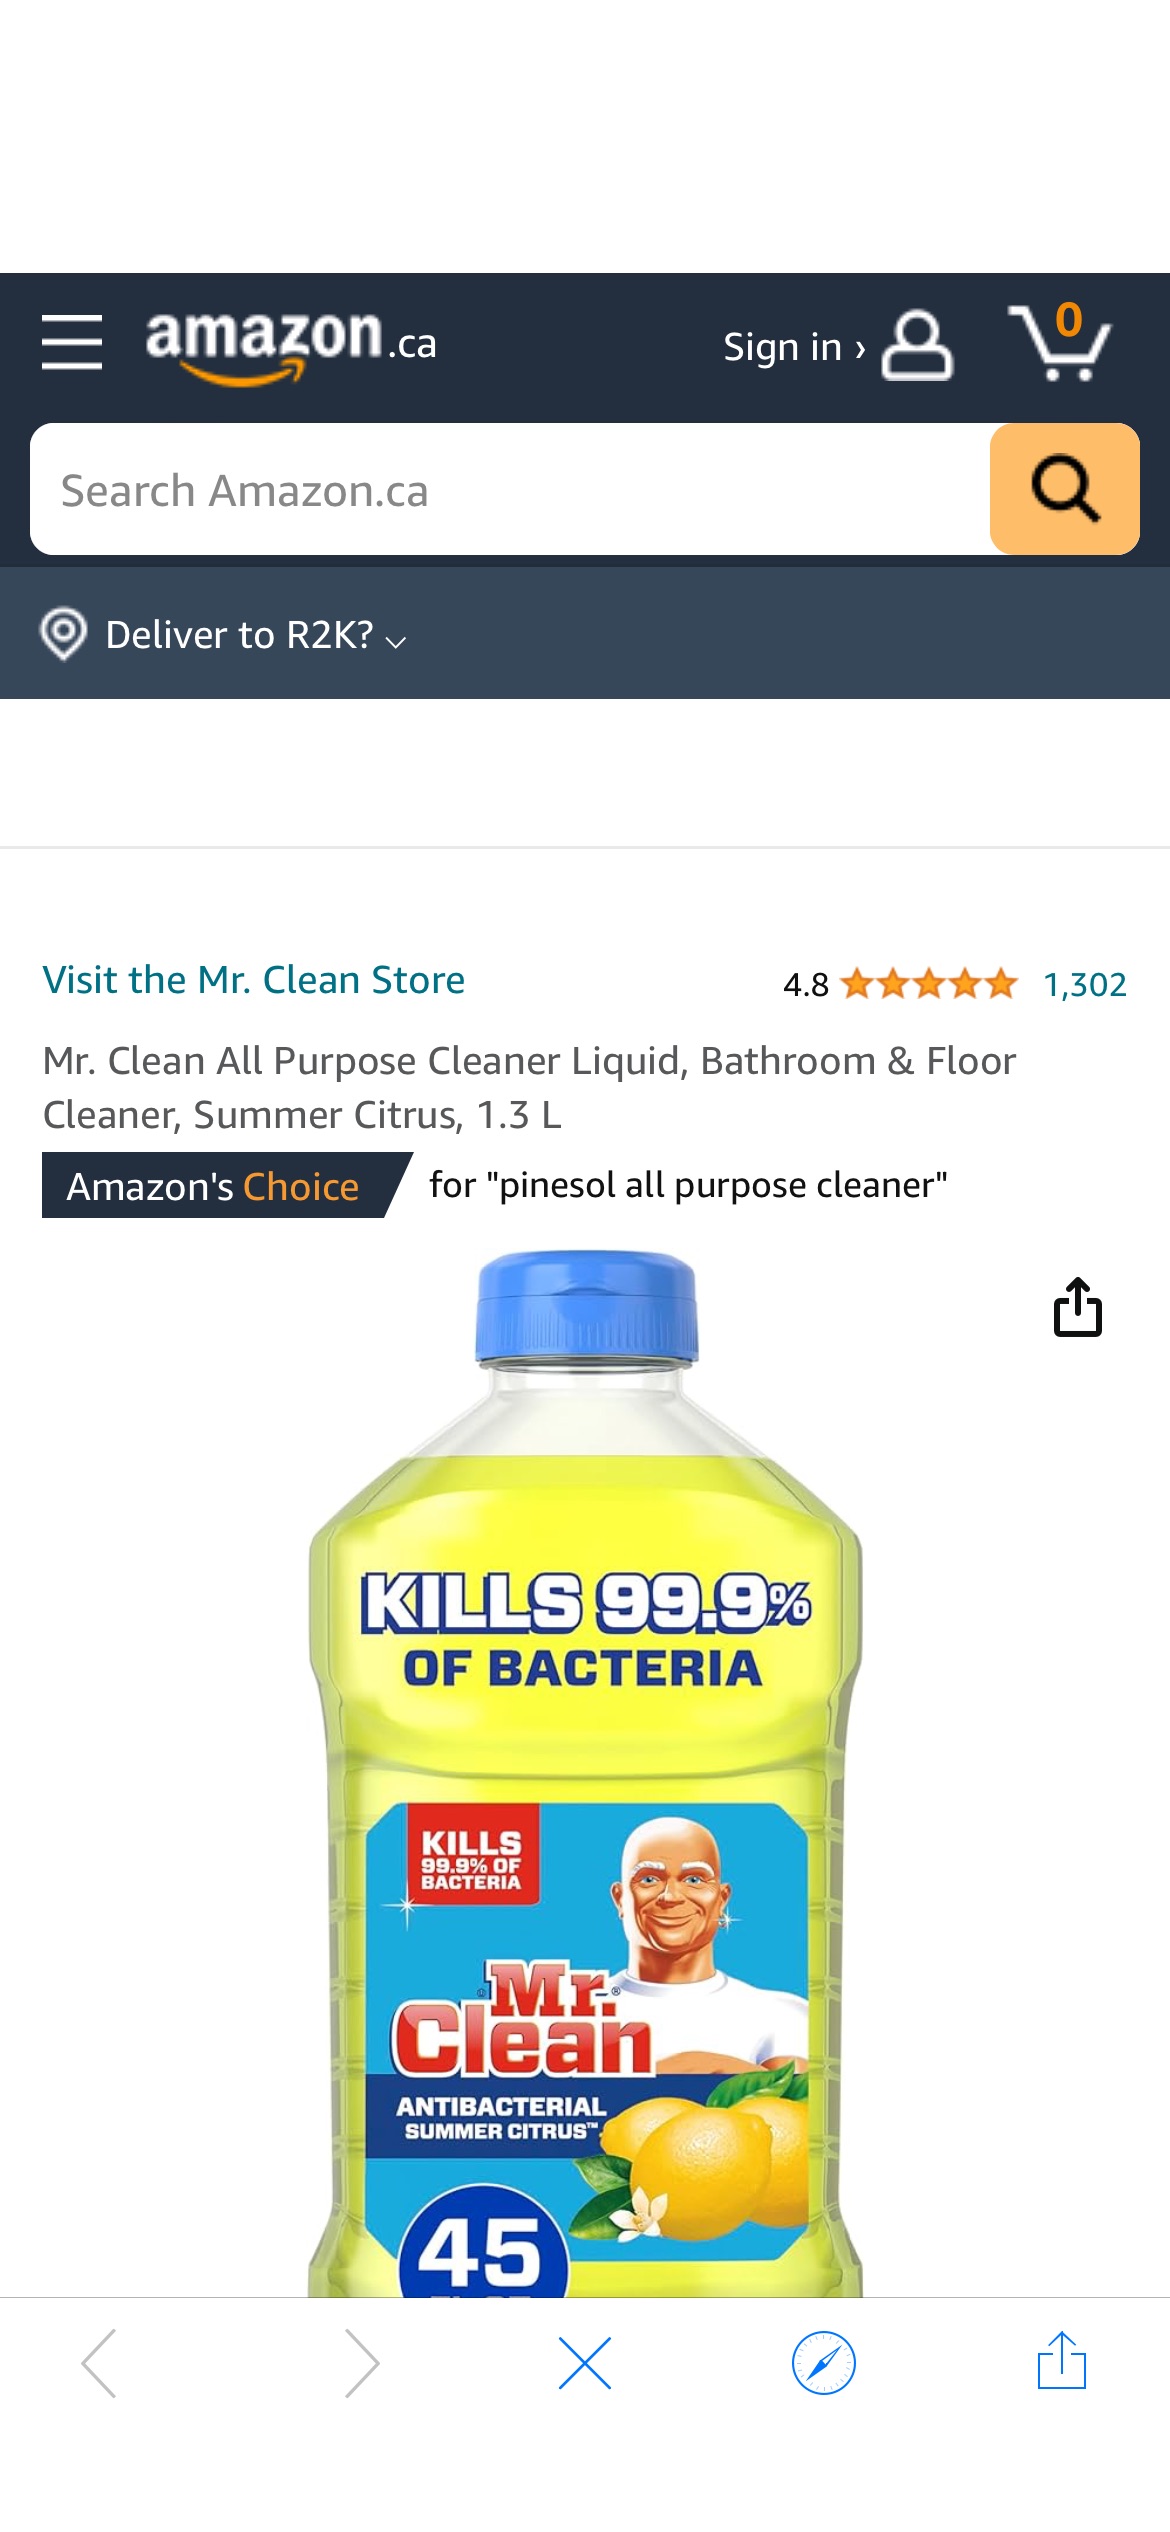 Mr. Clean All Purpose Cleaner Liquid, Bathroom & Floor Cleaner, Summer Citrus, 1.3 L : Amazon.ca: Health & Personal Care